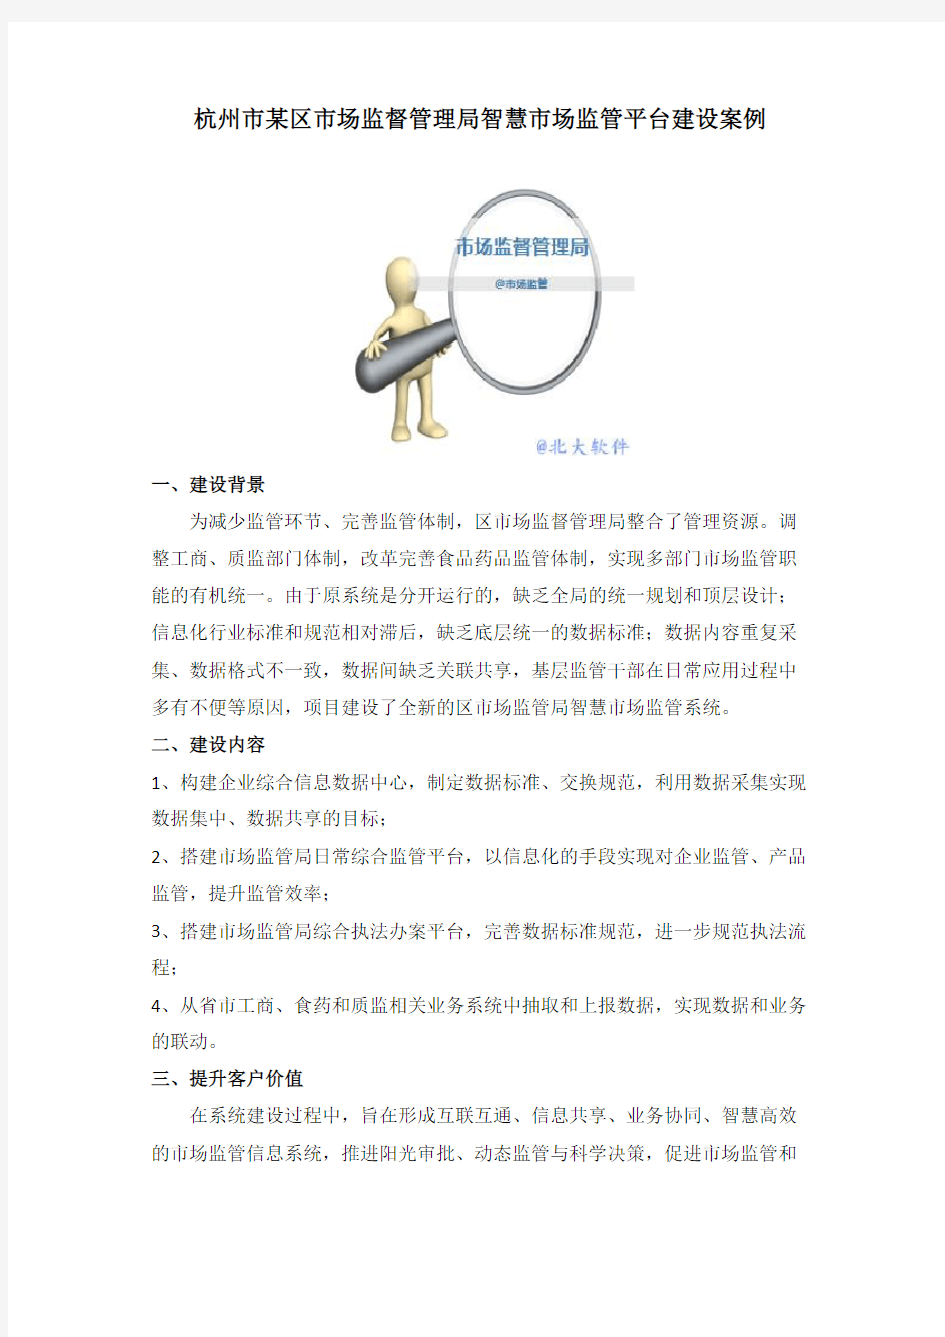 杭州市某区市场监督管理局智慧市场监管平台建设案例